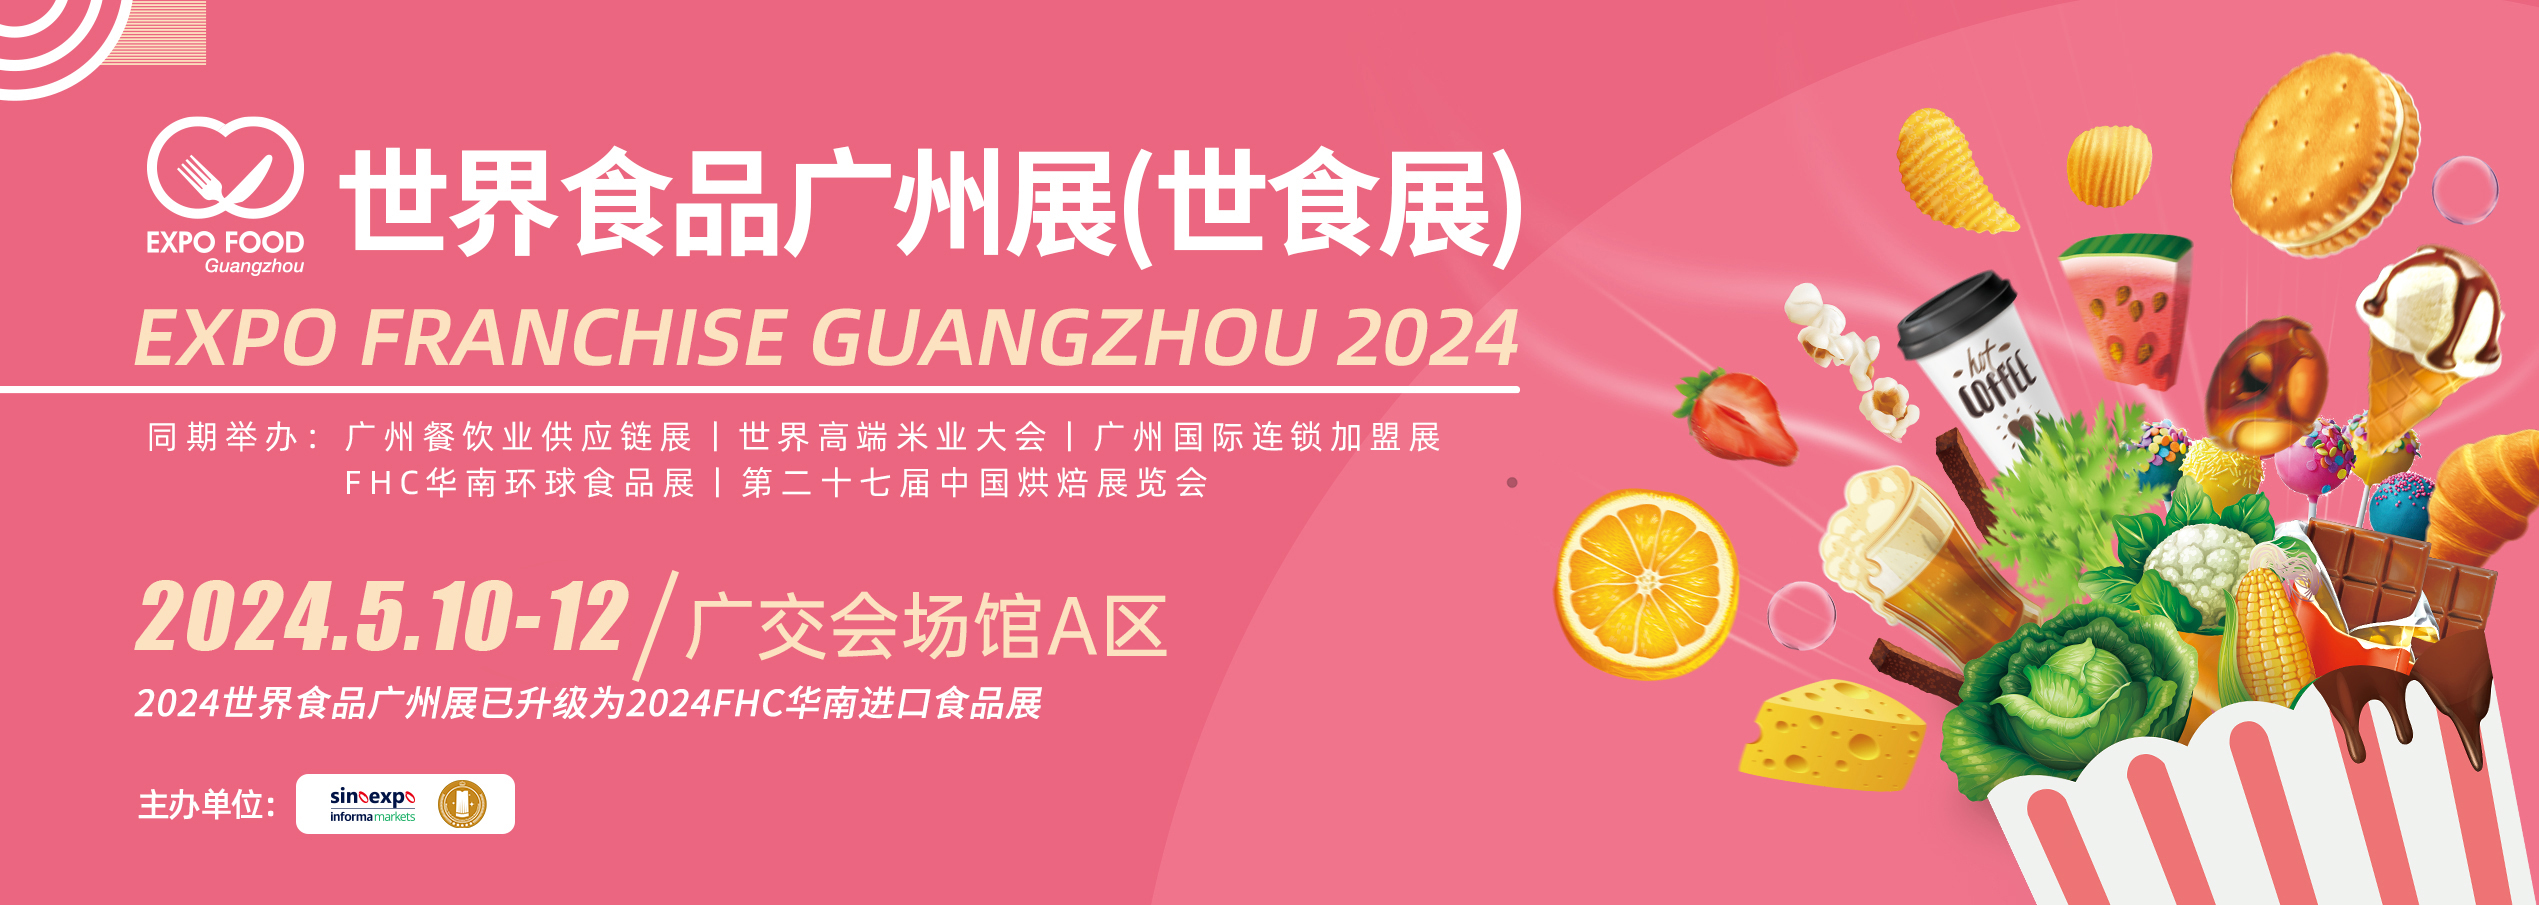 中文2023食品官网banner1123